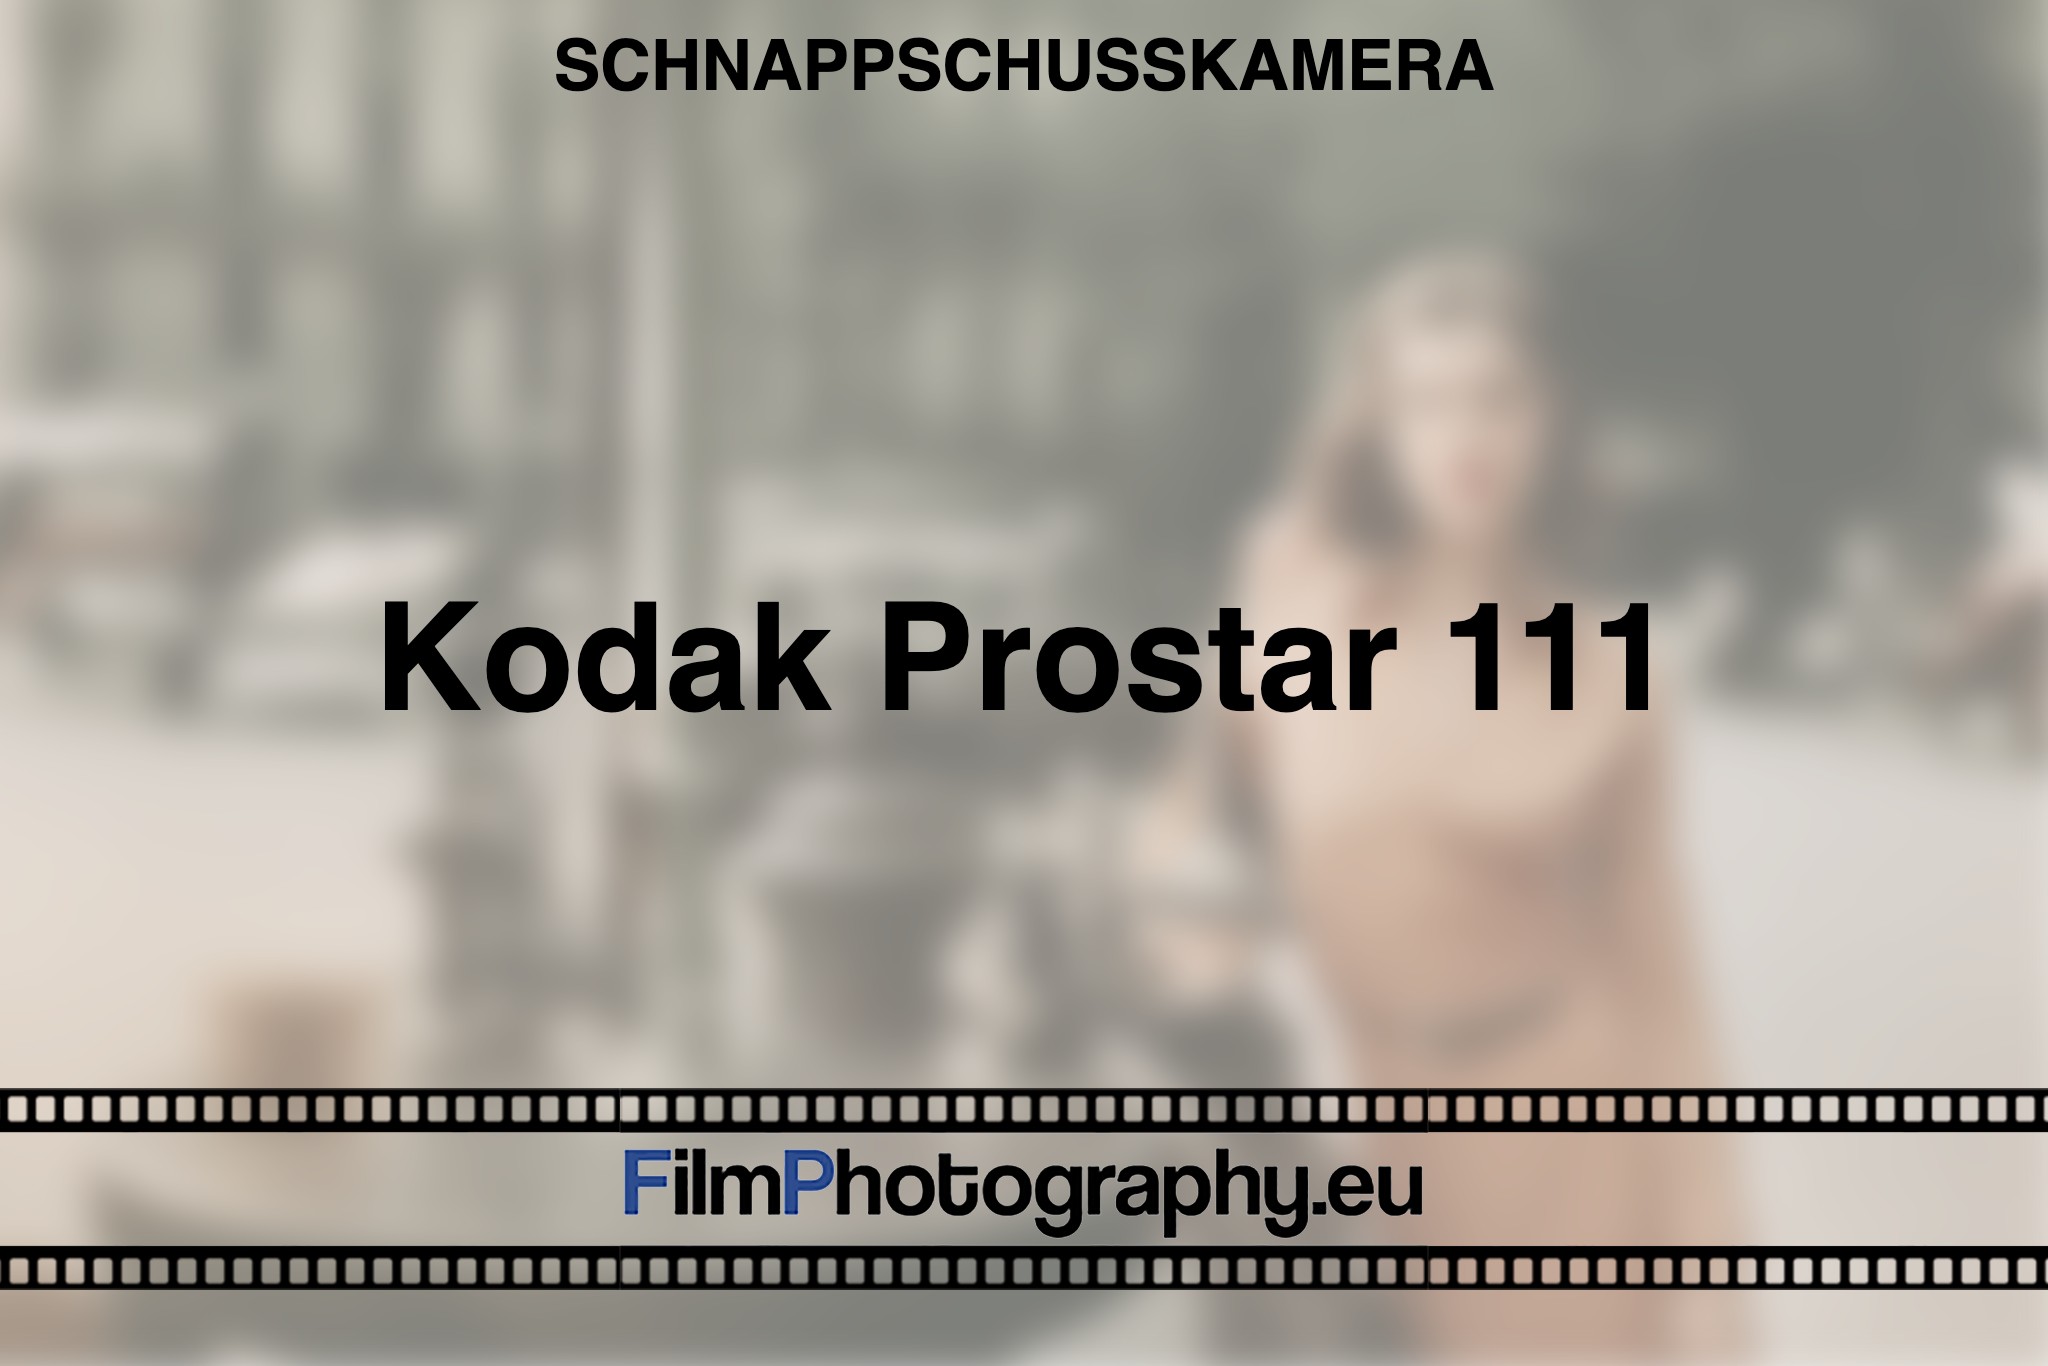 kodak-prostar-111-schnappschusskamera-bnv